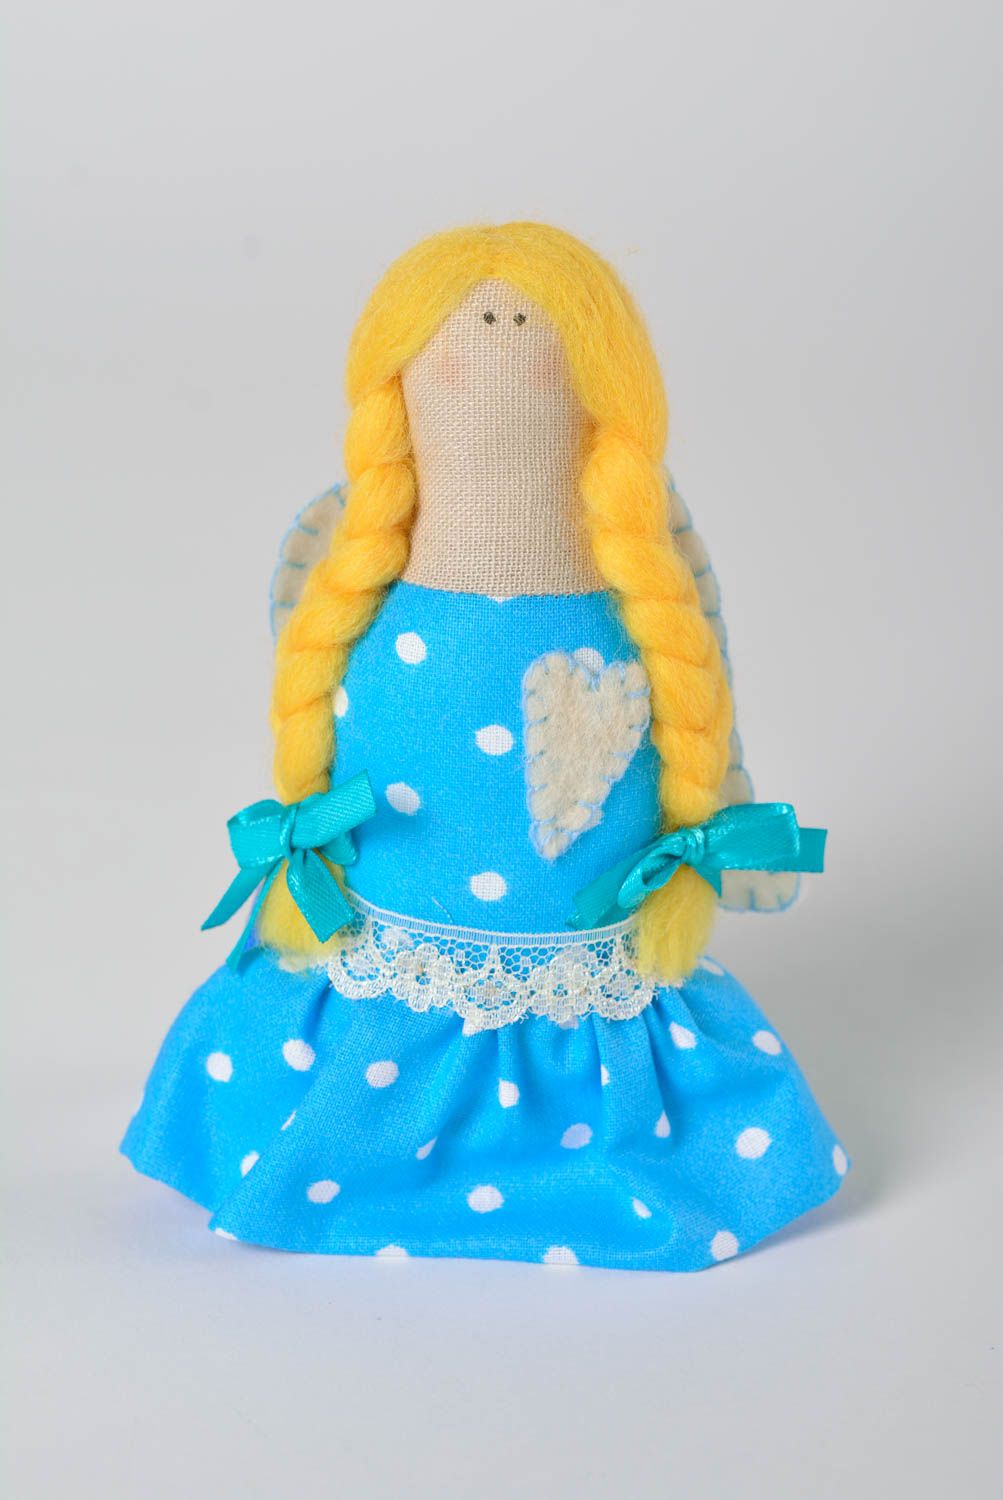 Мягкая игрушка ангел ручной работы игрушка для детей игрушка для девочек декор фото 1